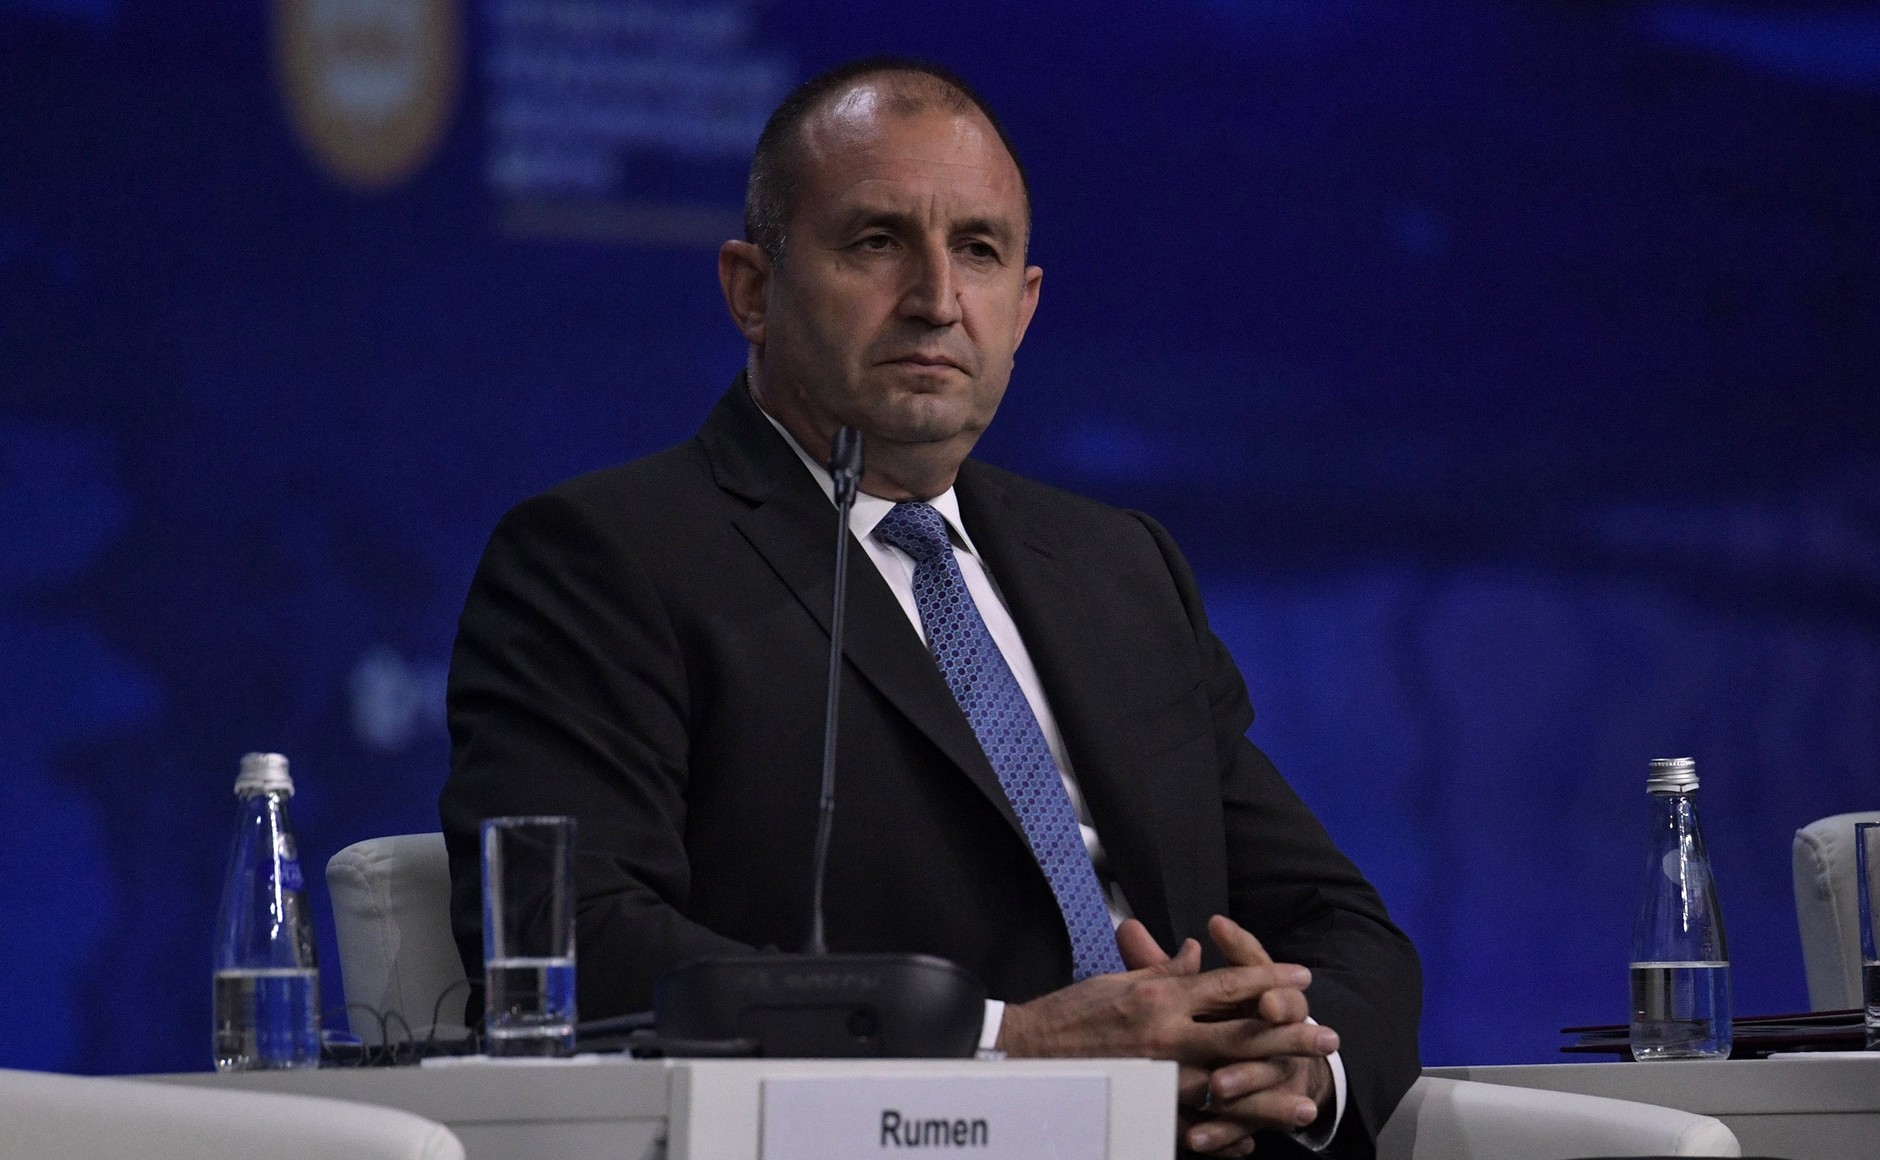 Bulgarian President Rumen Radev